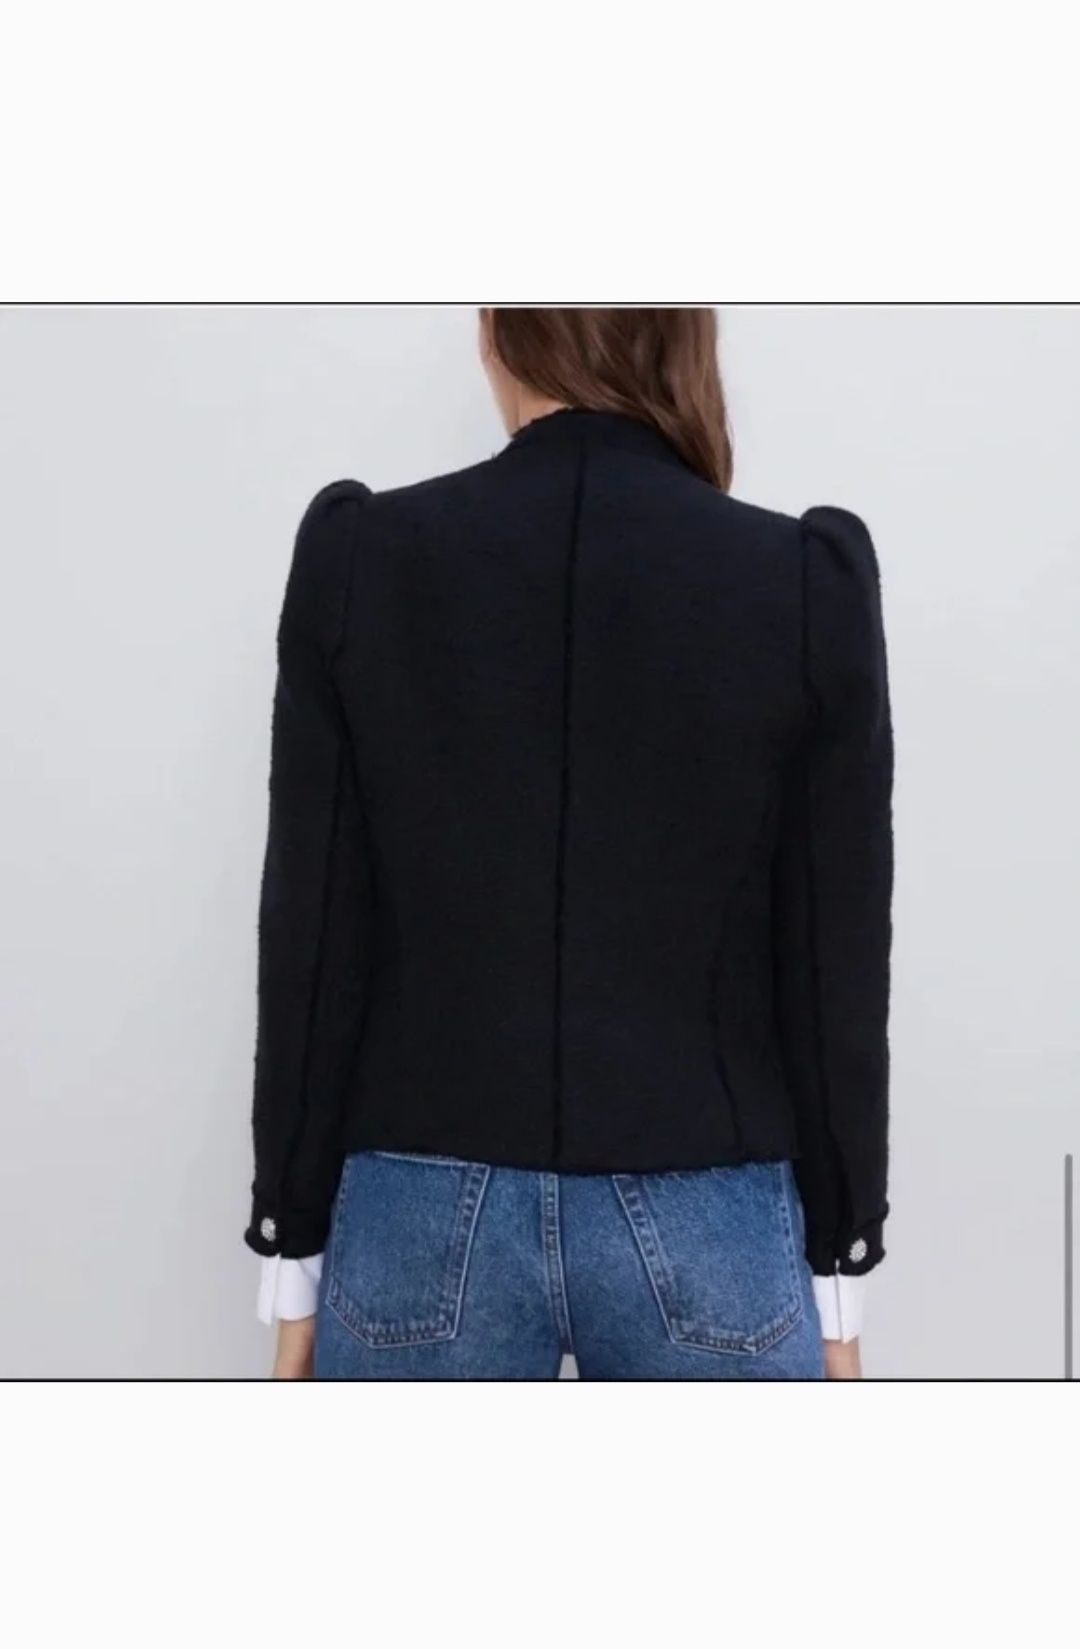 Жакет Zara піджак твідовий чорний розмір XS